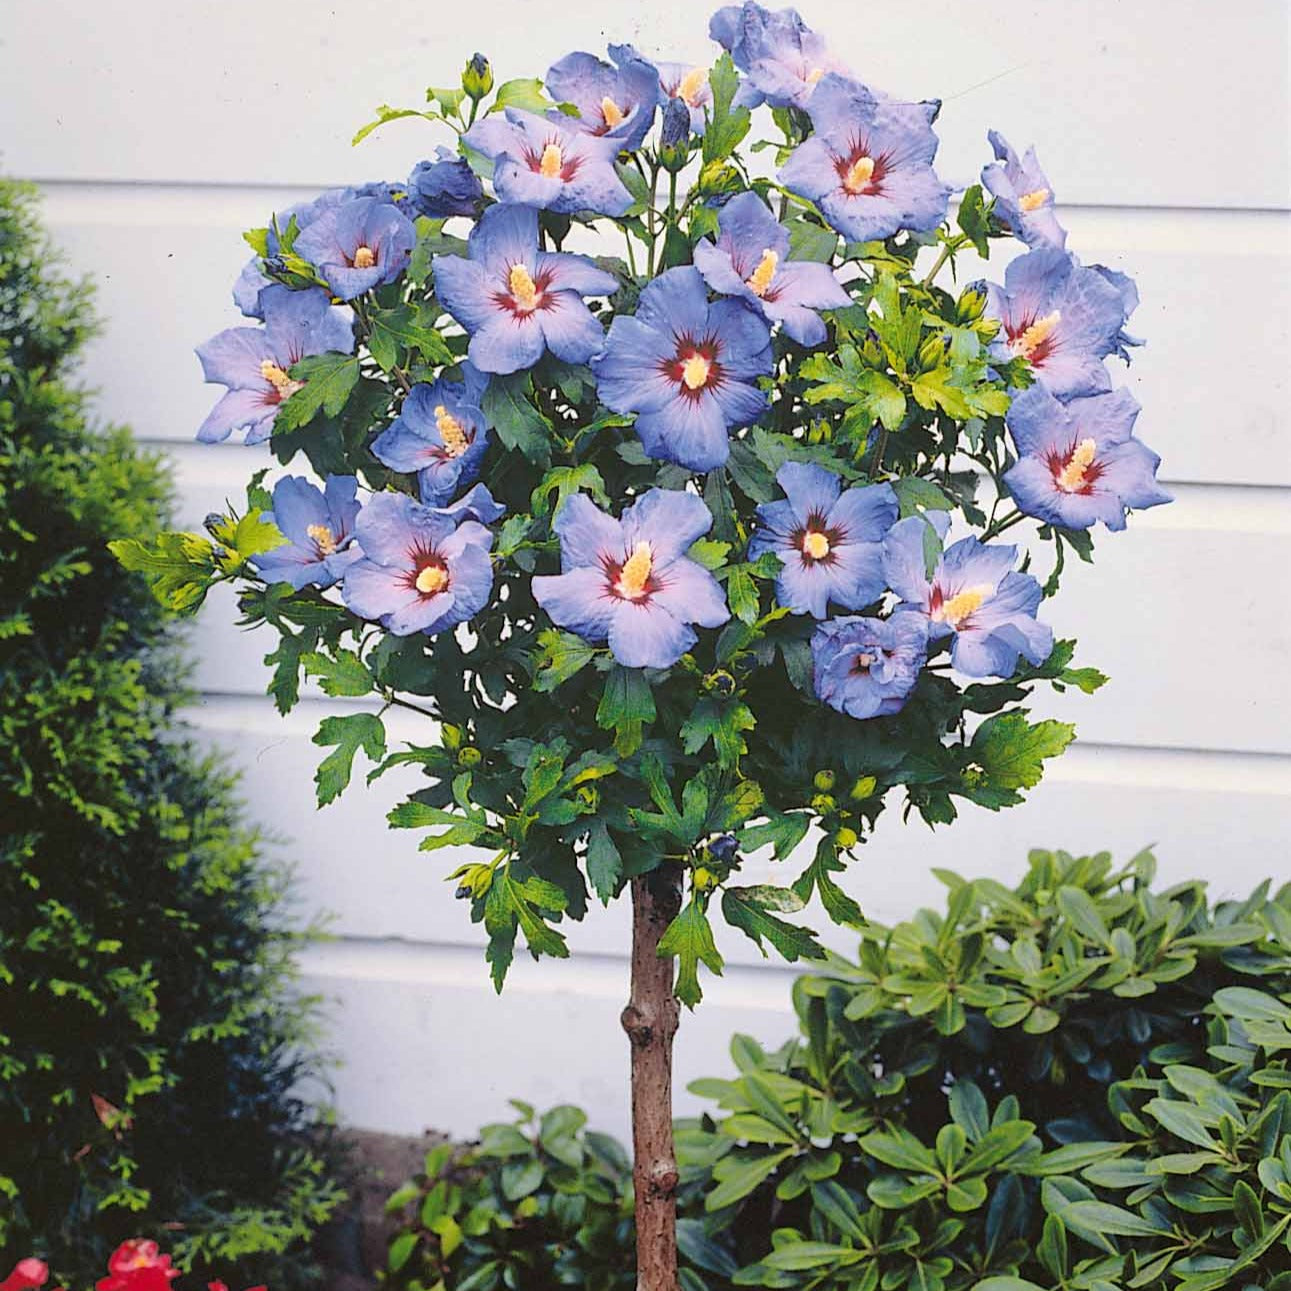 Hibiscus ou althéa (Hibiscus syriacus) : plante, taille, entretien, arrosage